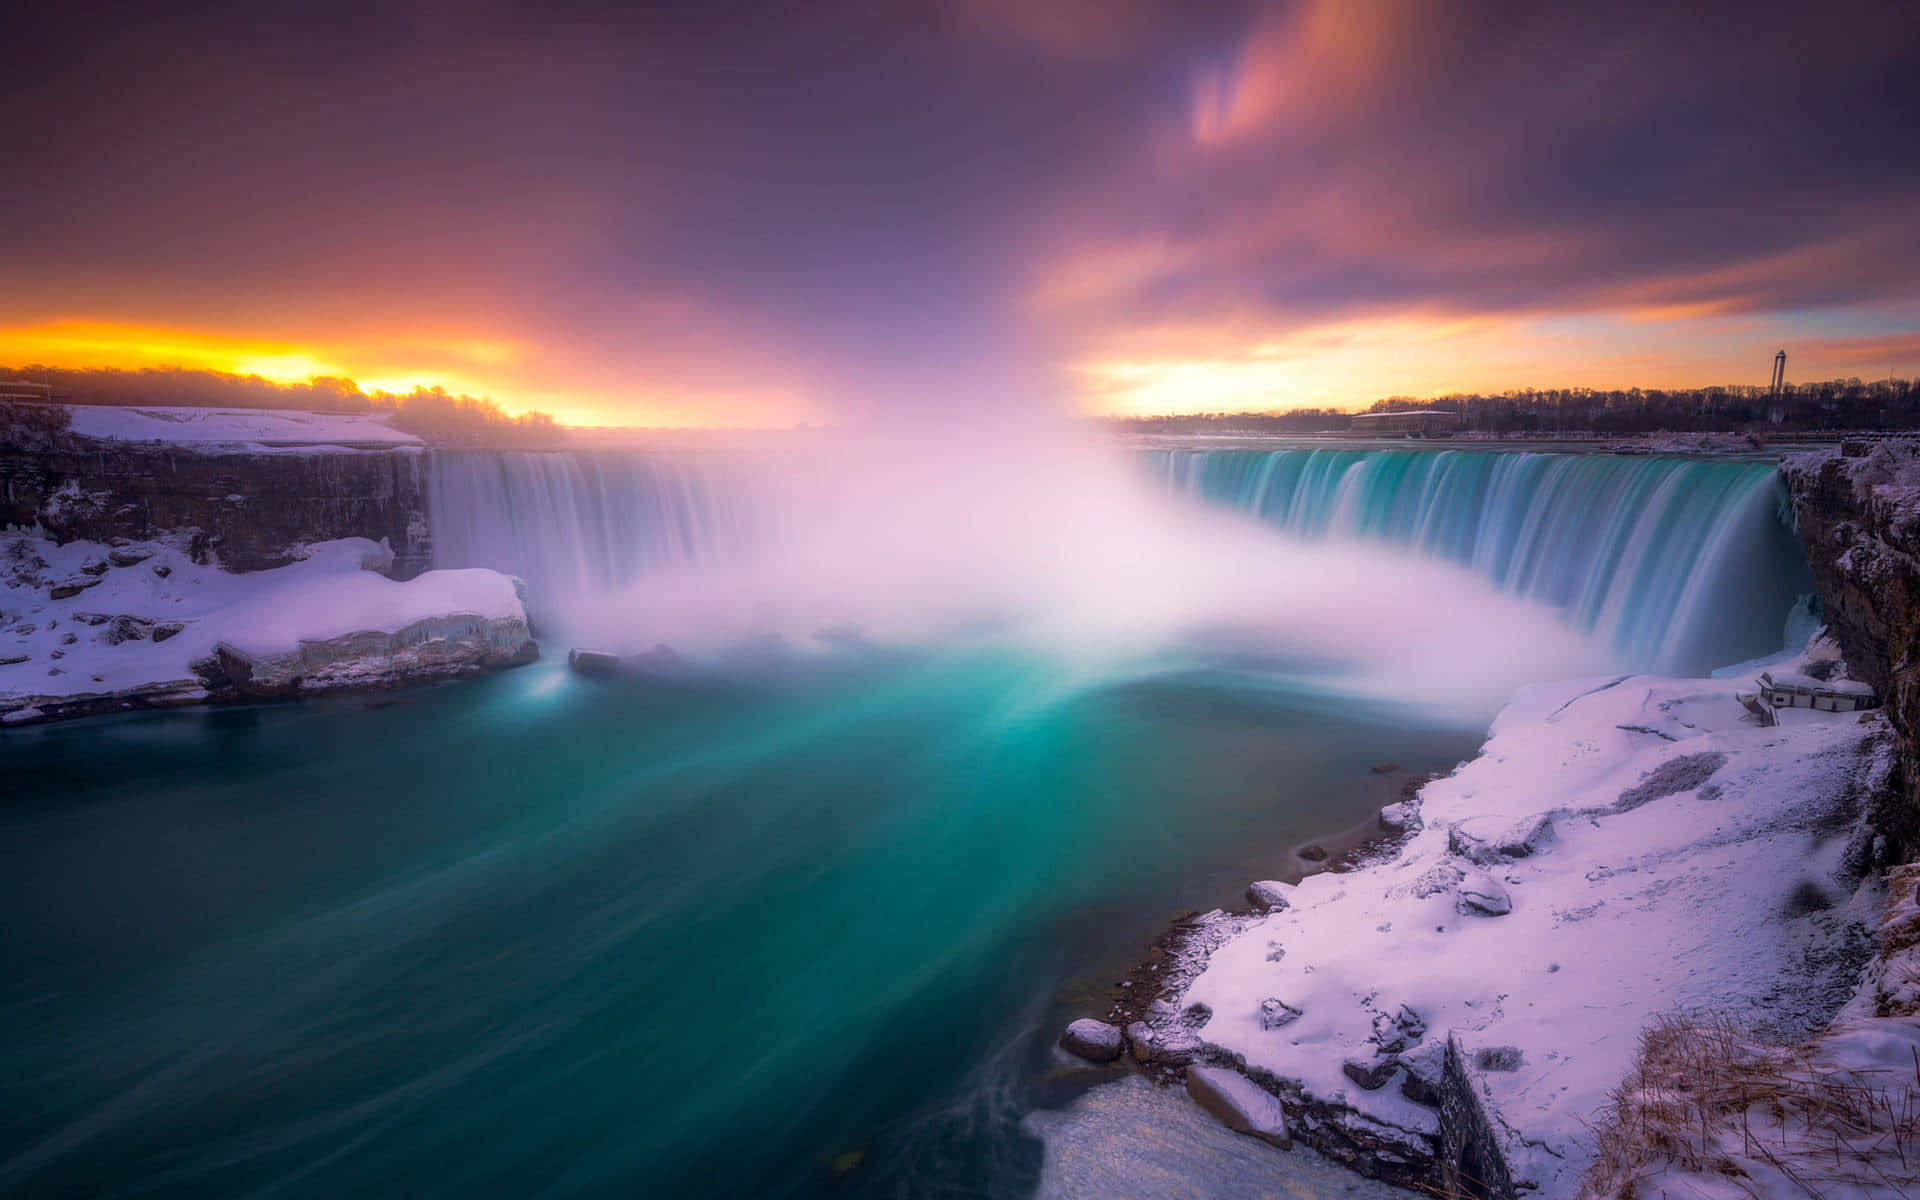 720pbillede Af Niagaravandfaldene.